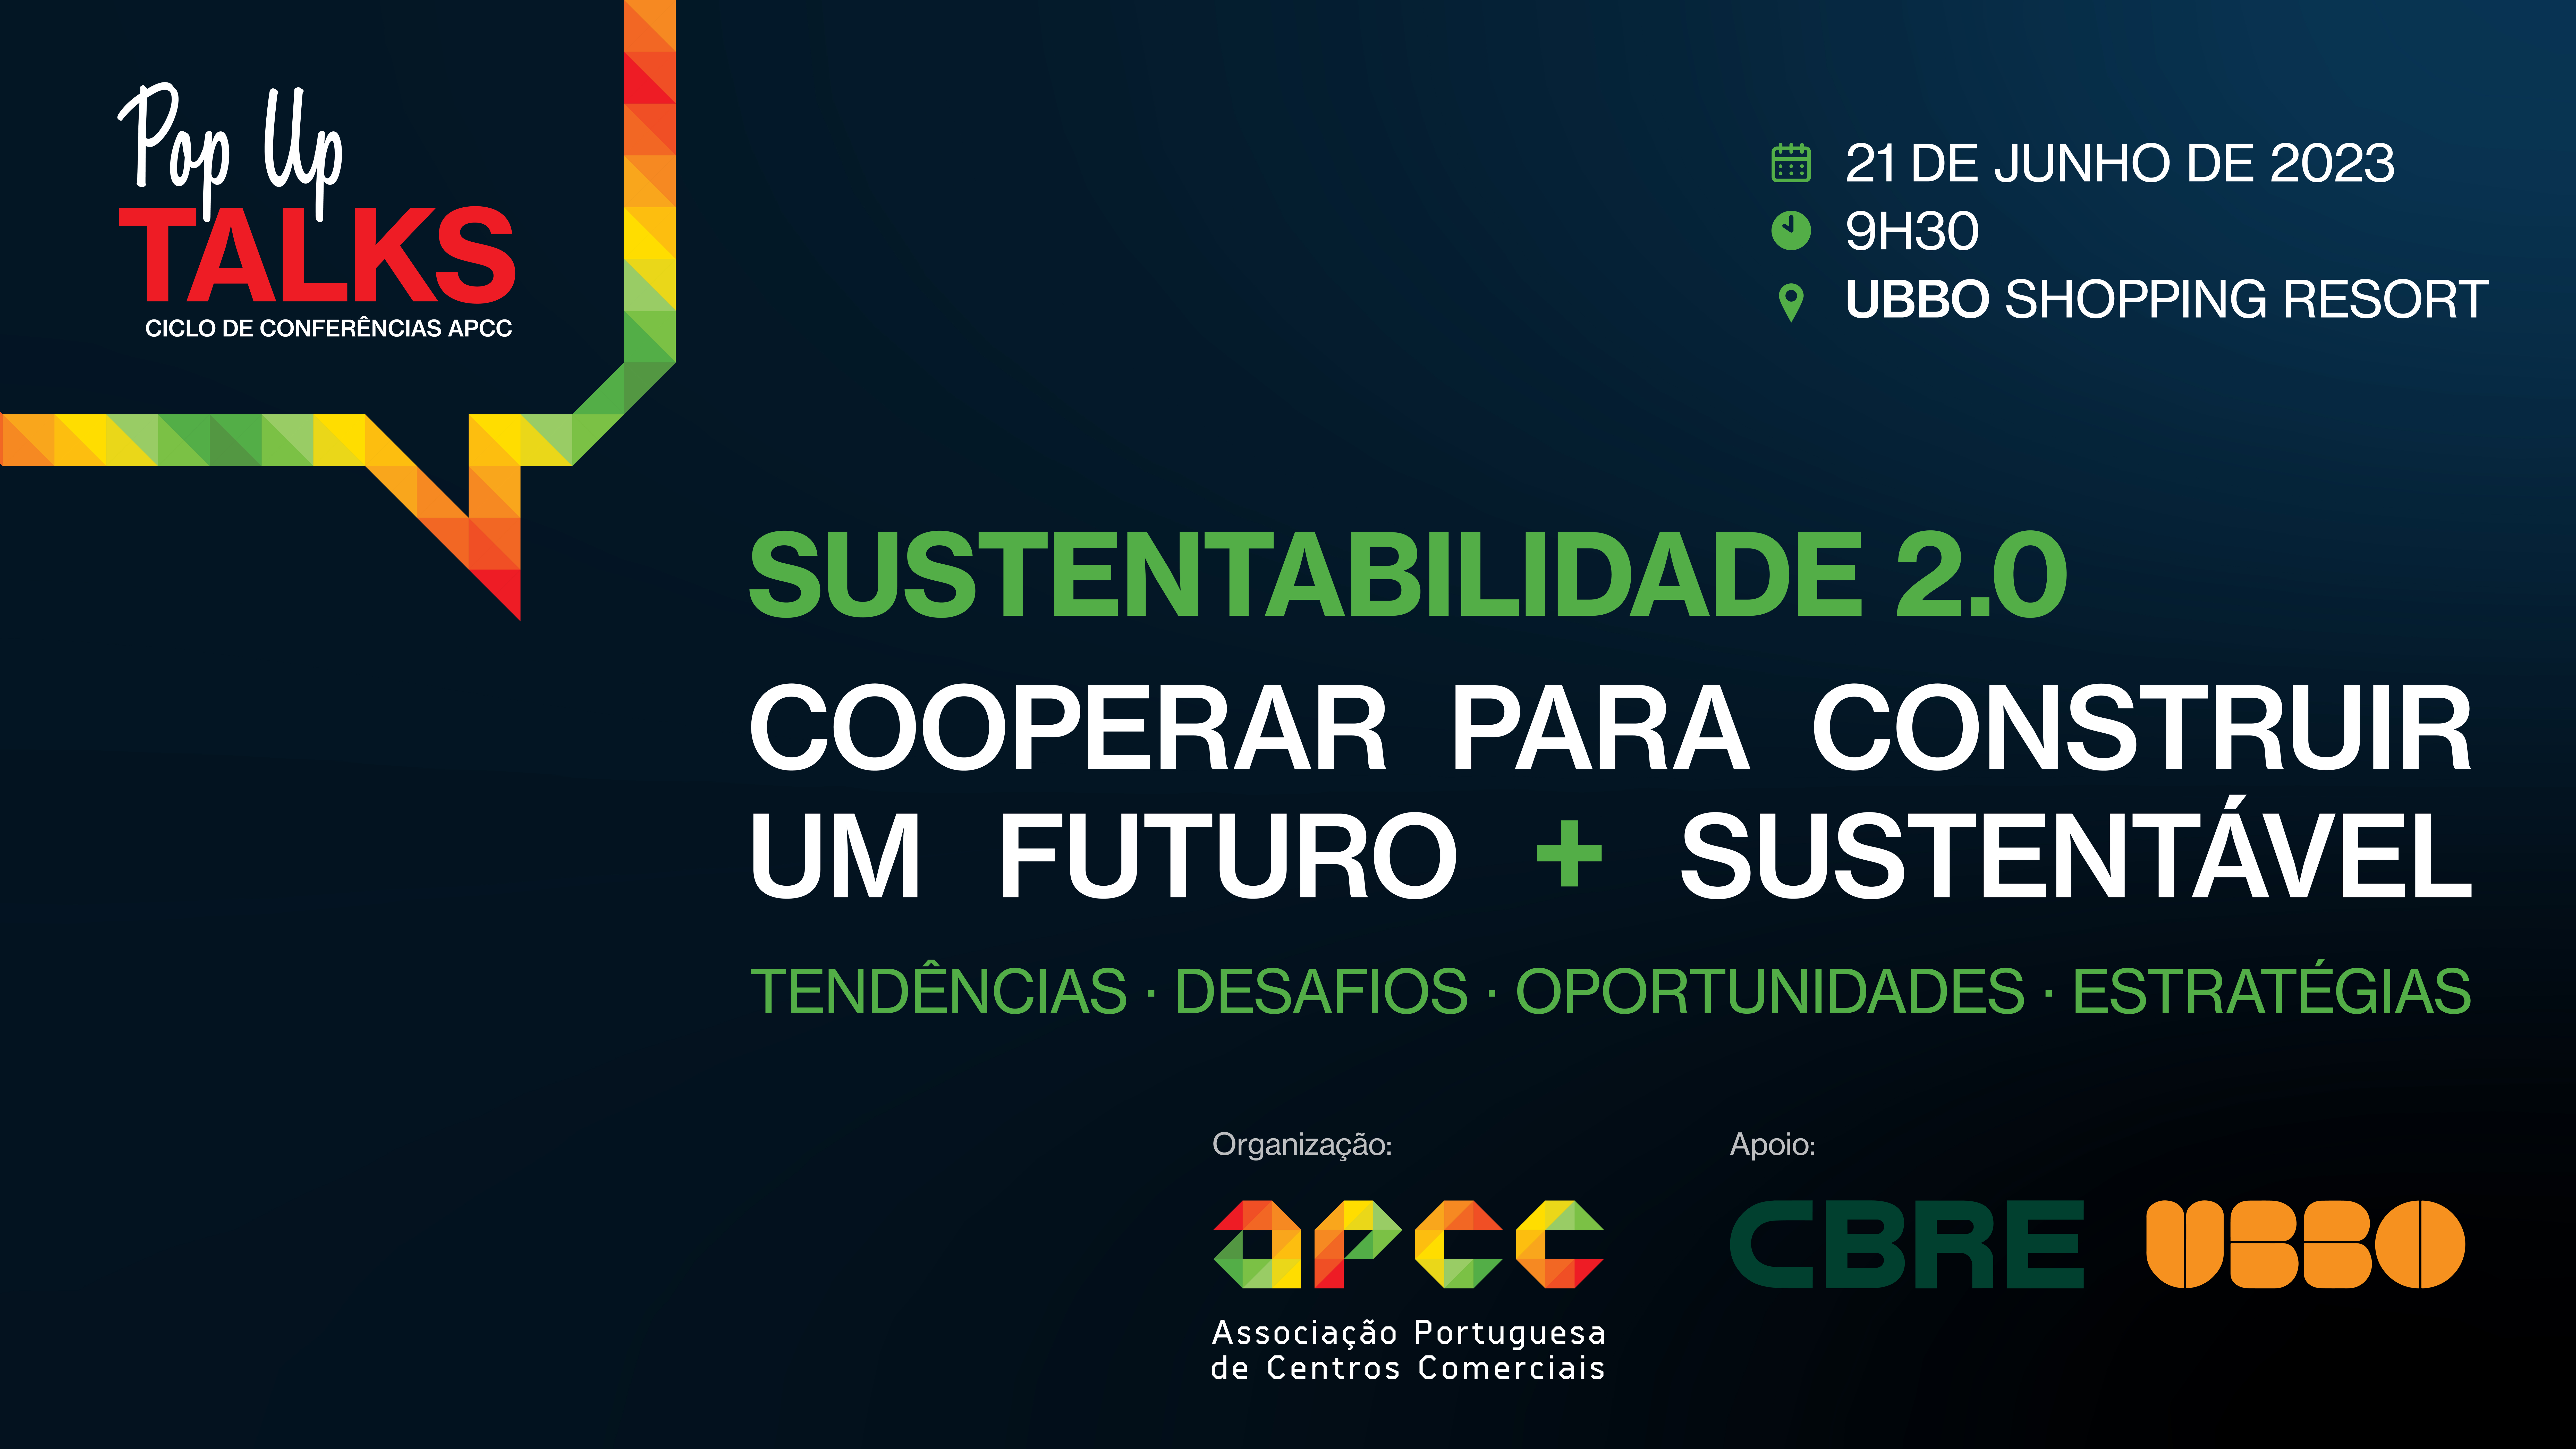 APCC - Associação Portuguesa de Centros Comerciais